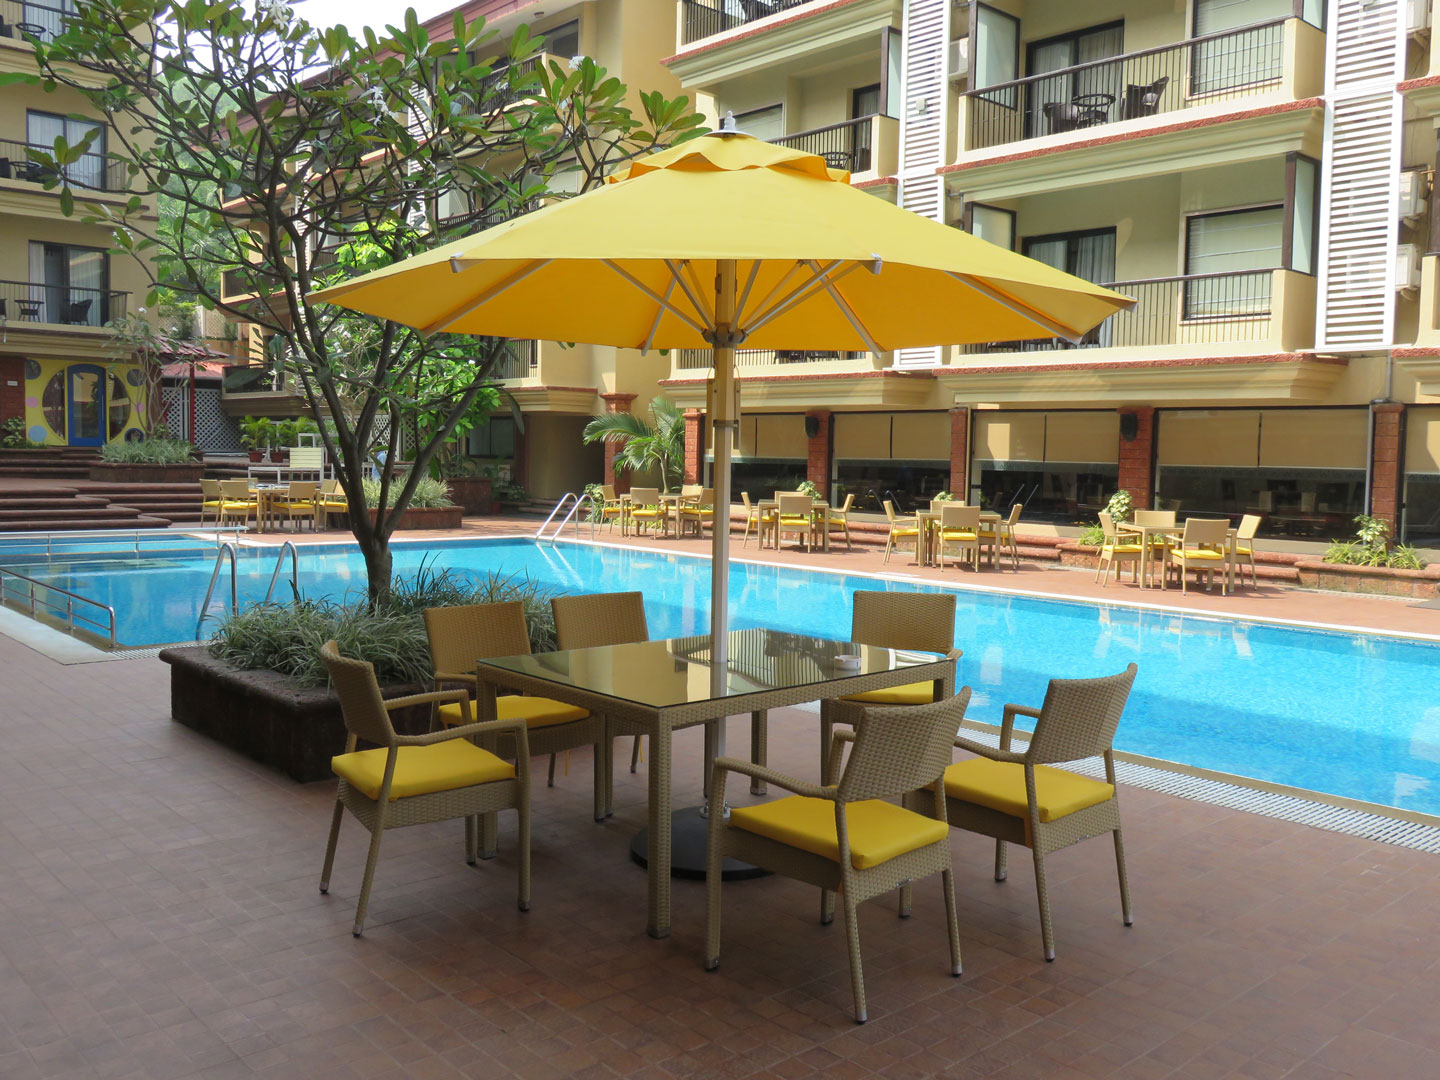 Book The Westin in anjuna,Goa - Best 5 Star Hotels in Goa - Justdial